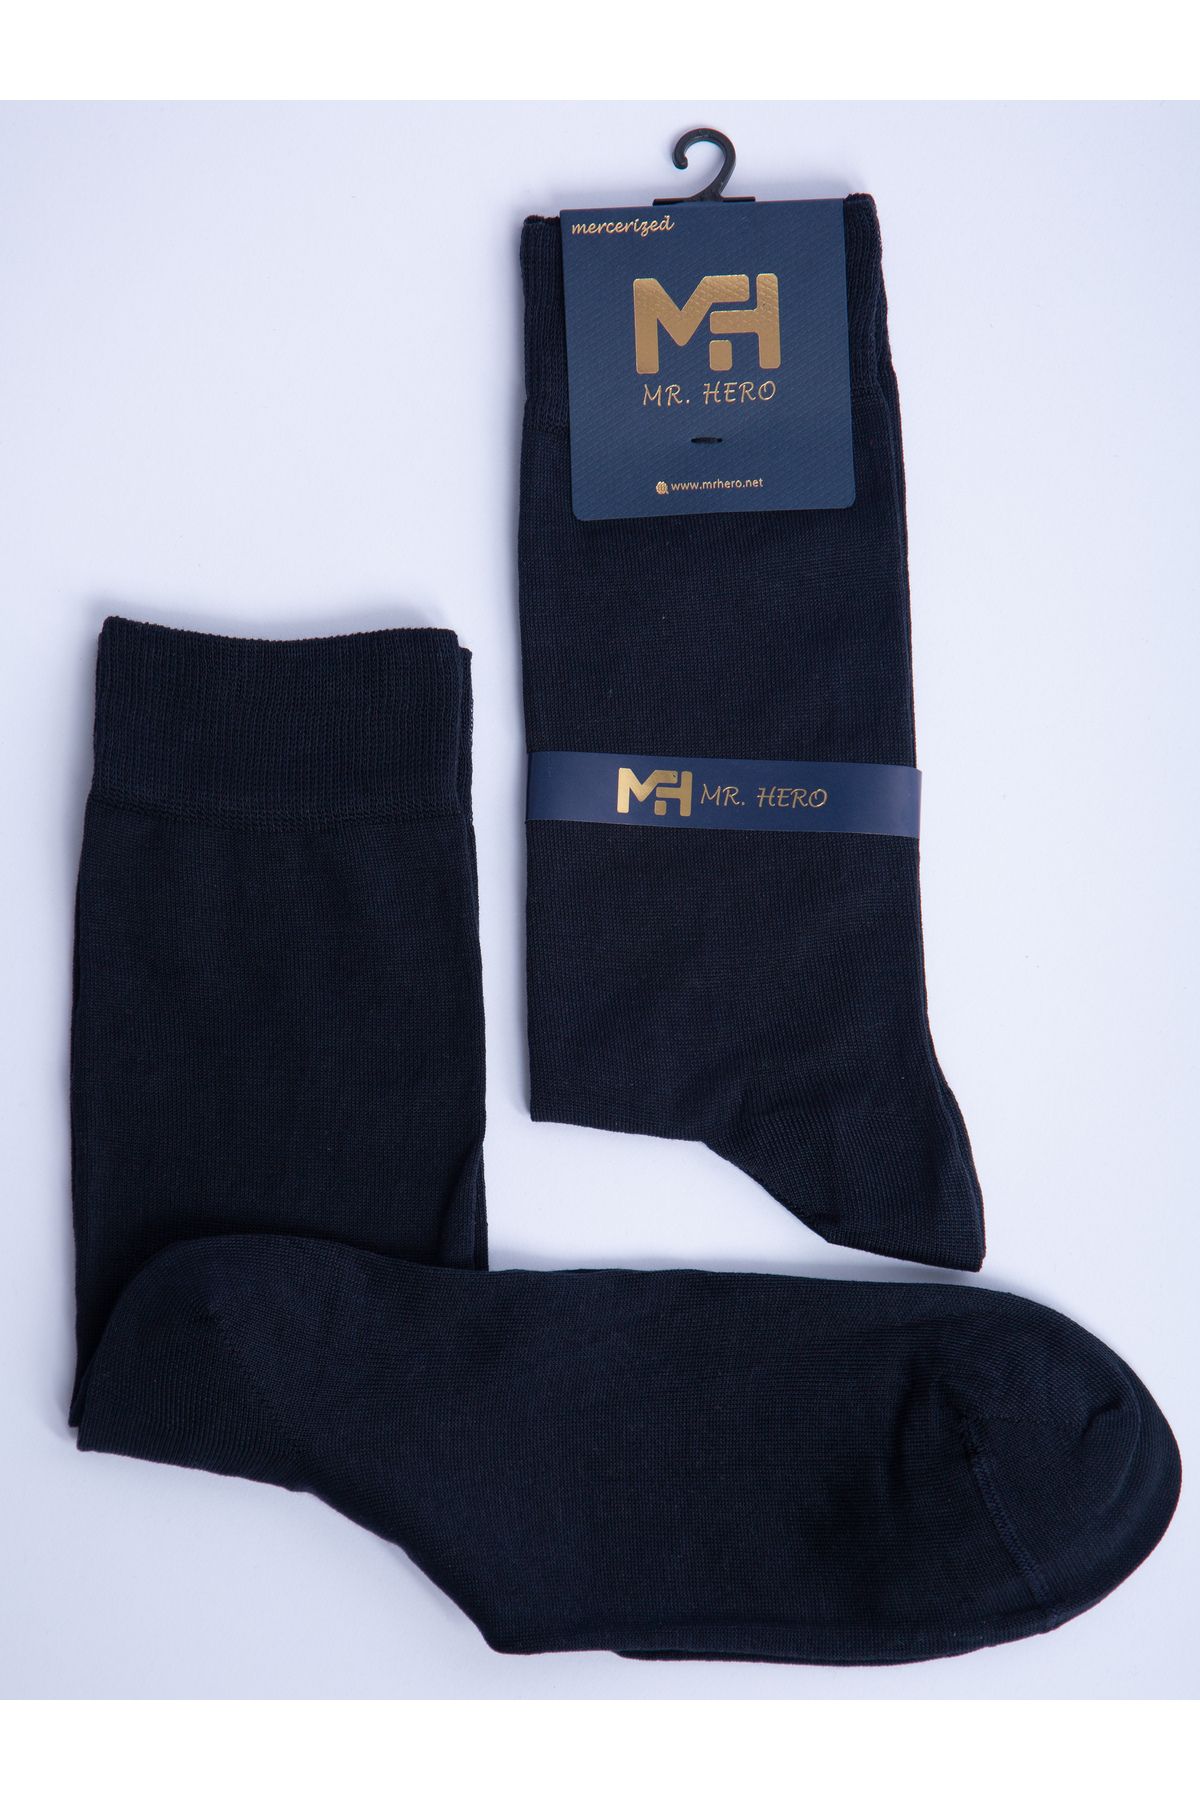 MRHERO Merserize 6'lı Lacivert Erkek Uzun Klasik Soket Çorap 1078-mh